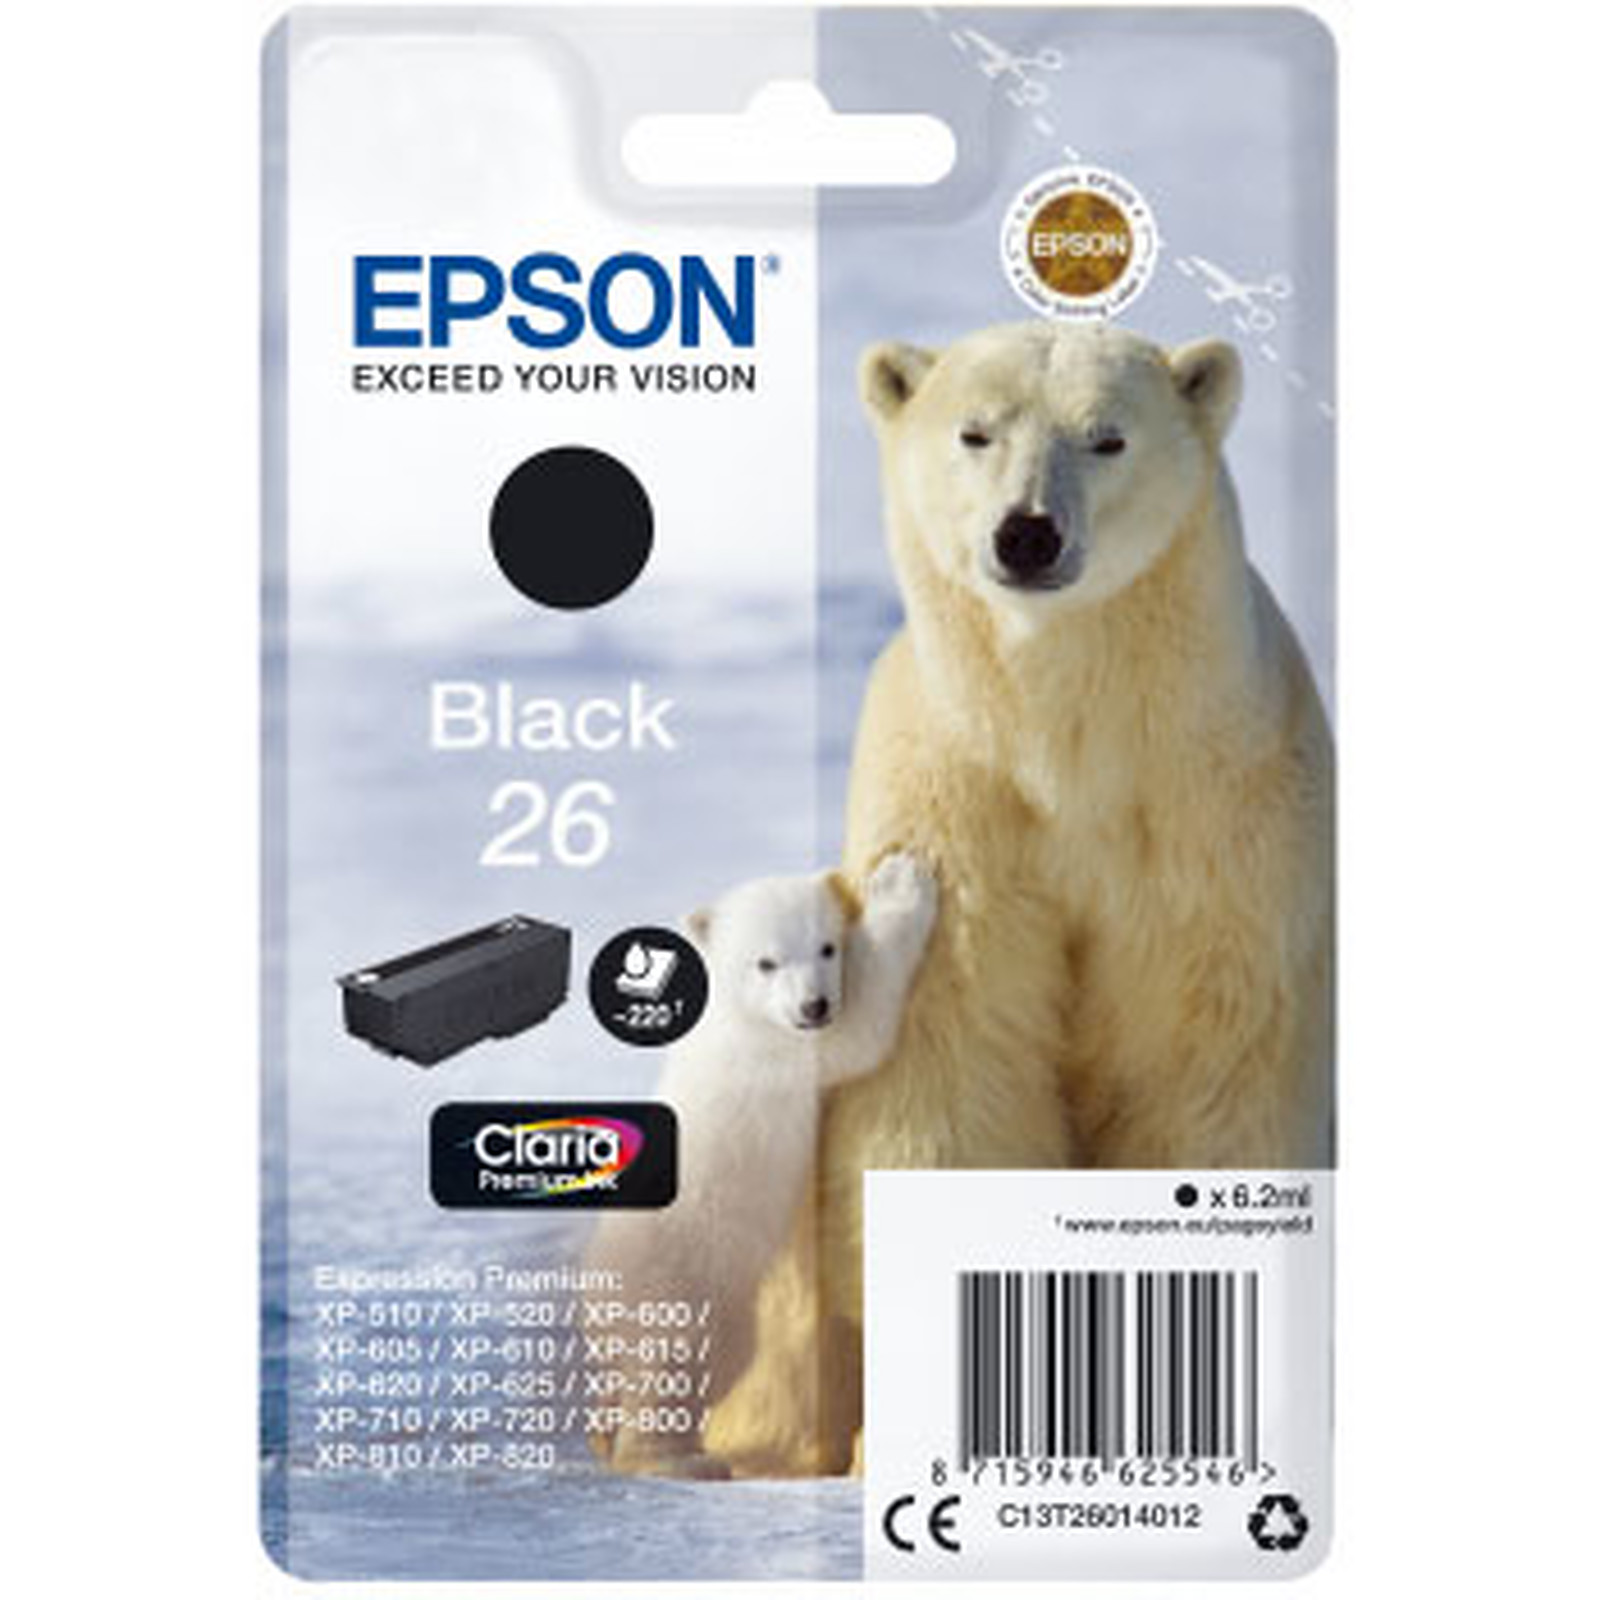 Epson Ours Polaire 26 Noir - Cartouche imprimante Epson